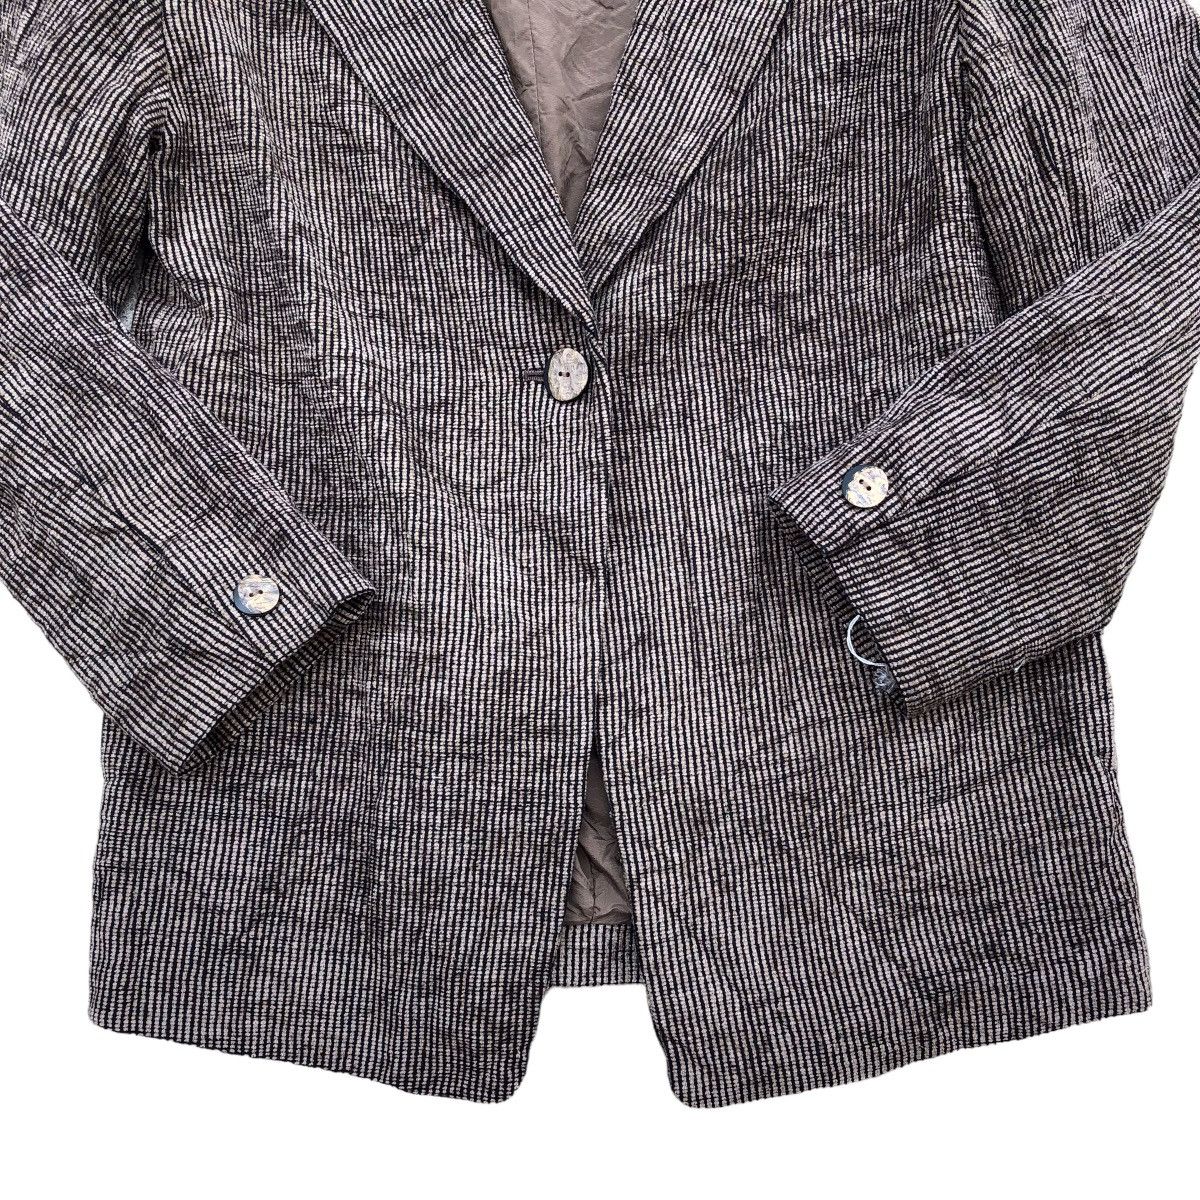 Archival Clothing PAUL LEMAIRE Corduroy Blazer Coat Size M / US 6-8 / IT 42-44 - 4 Thumbnail